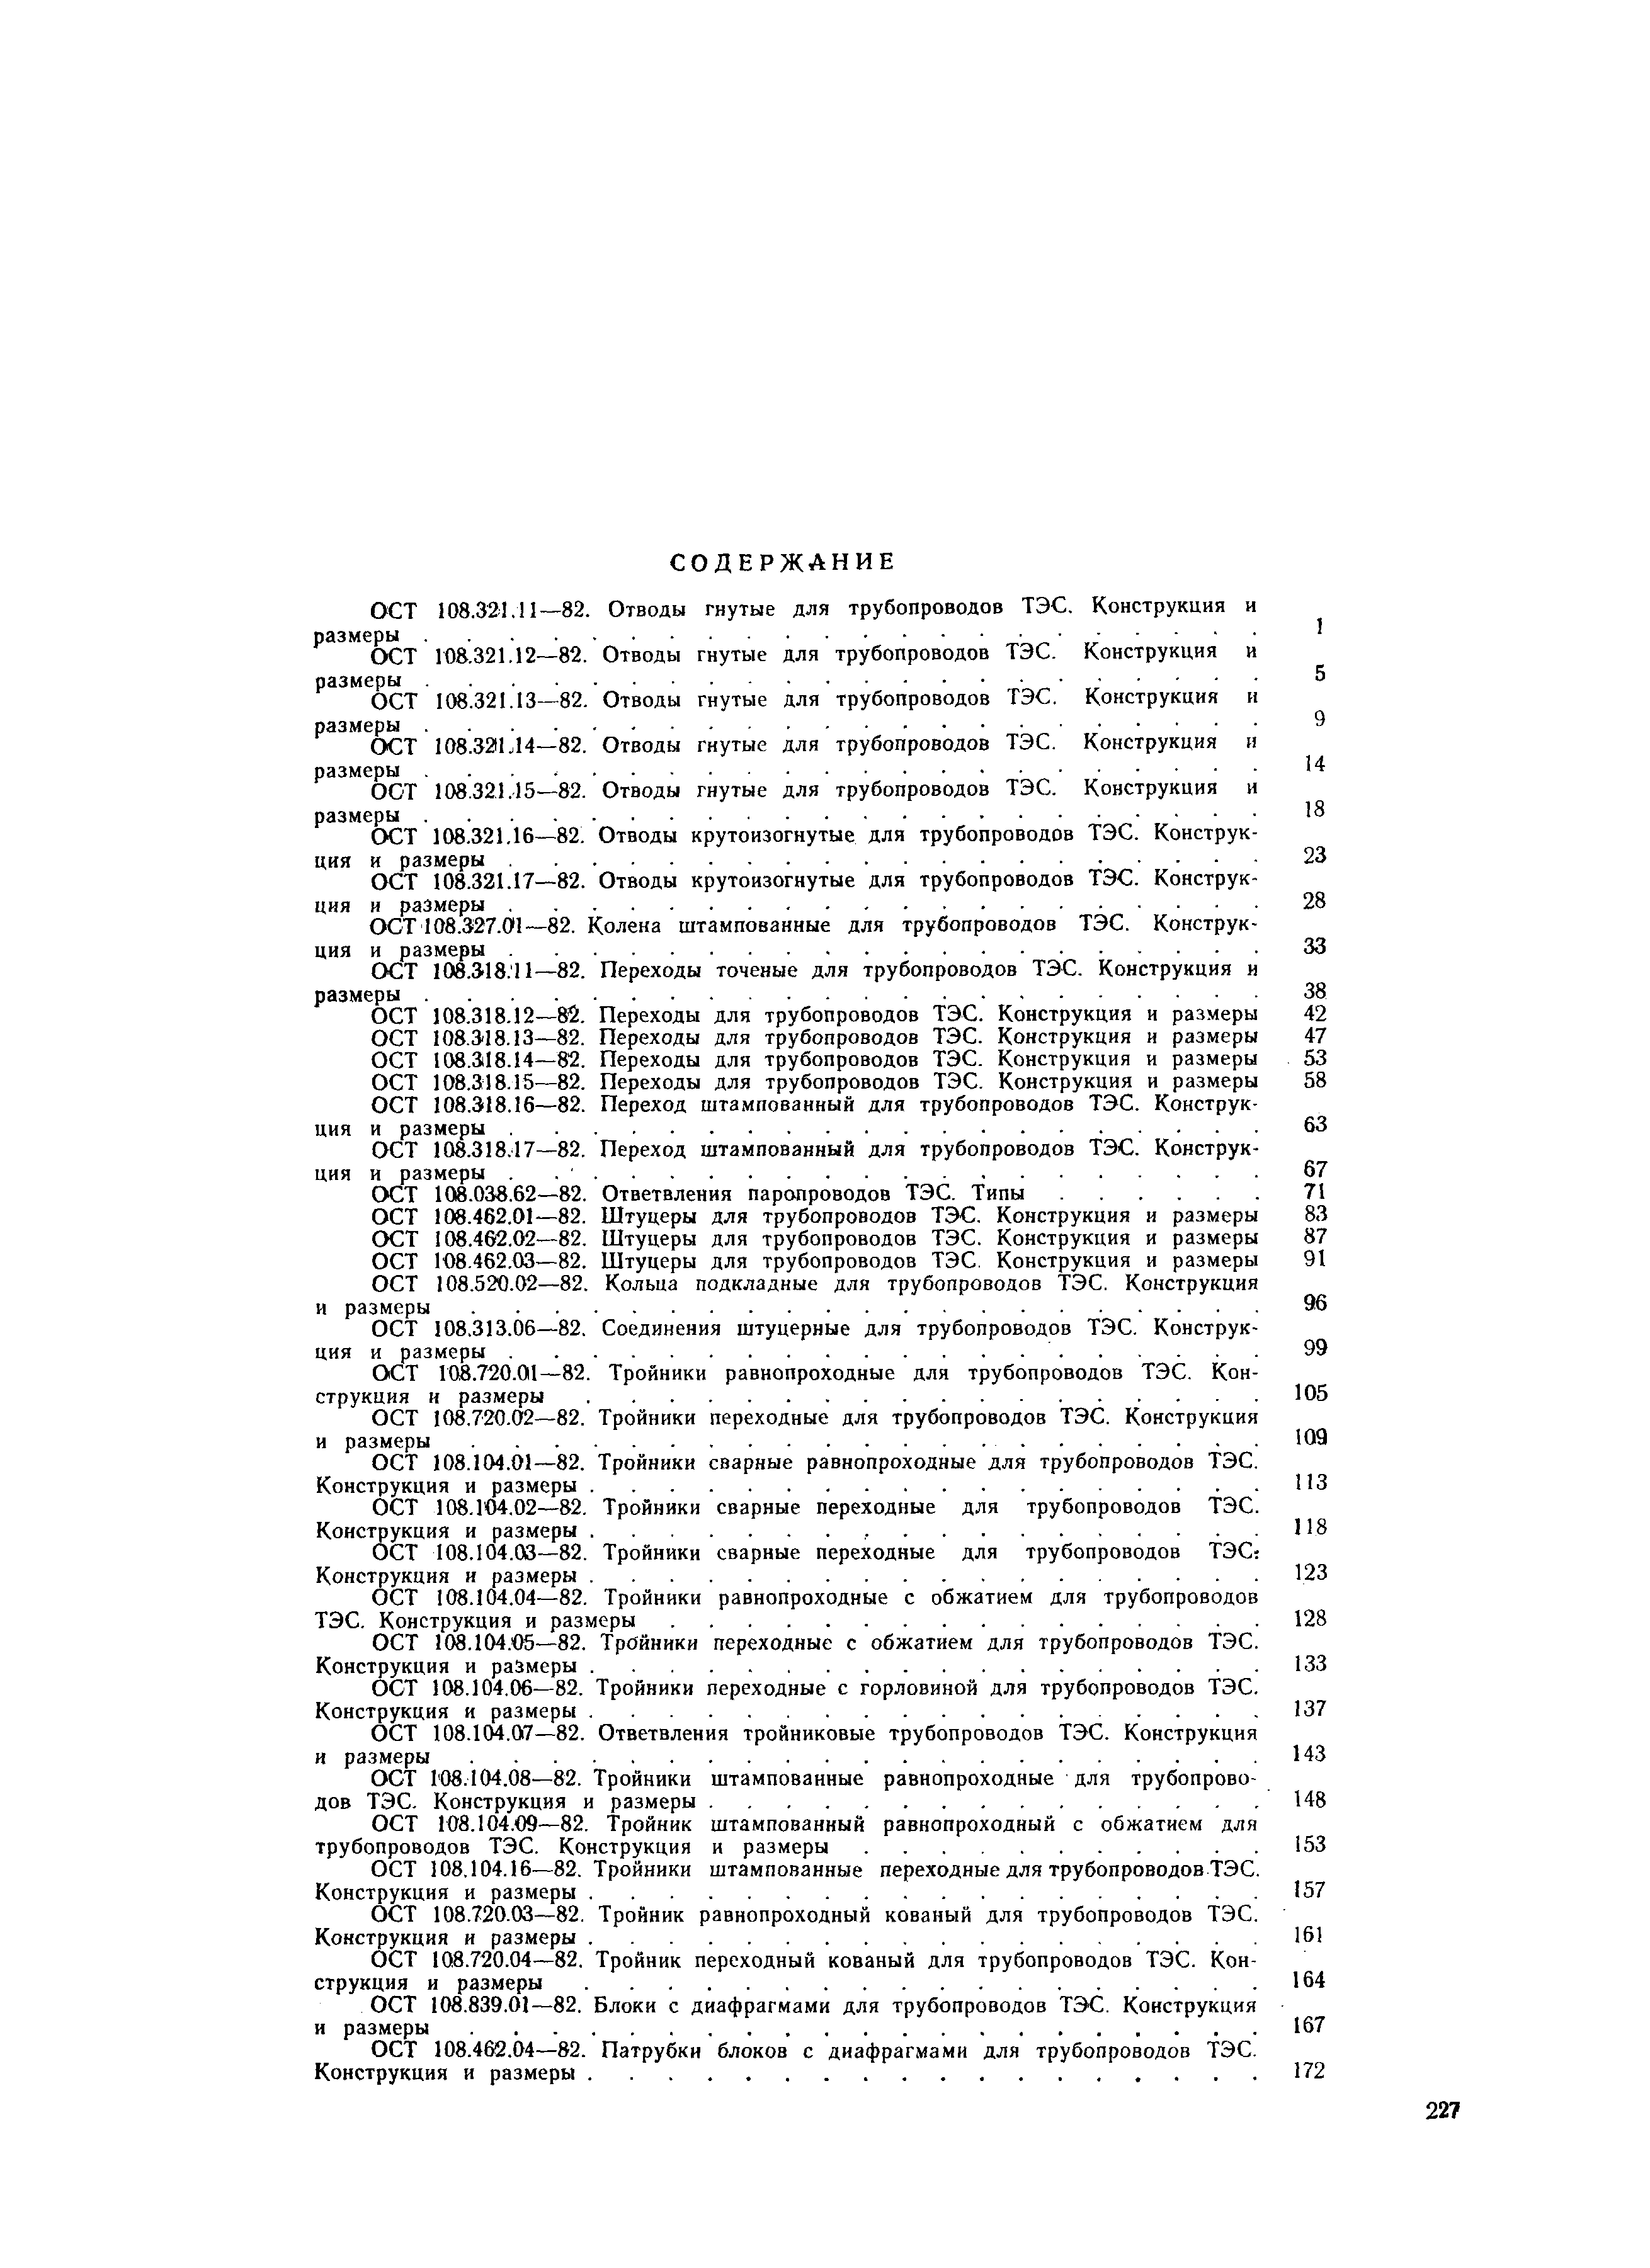 ОСТ 108.321.12-82